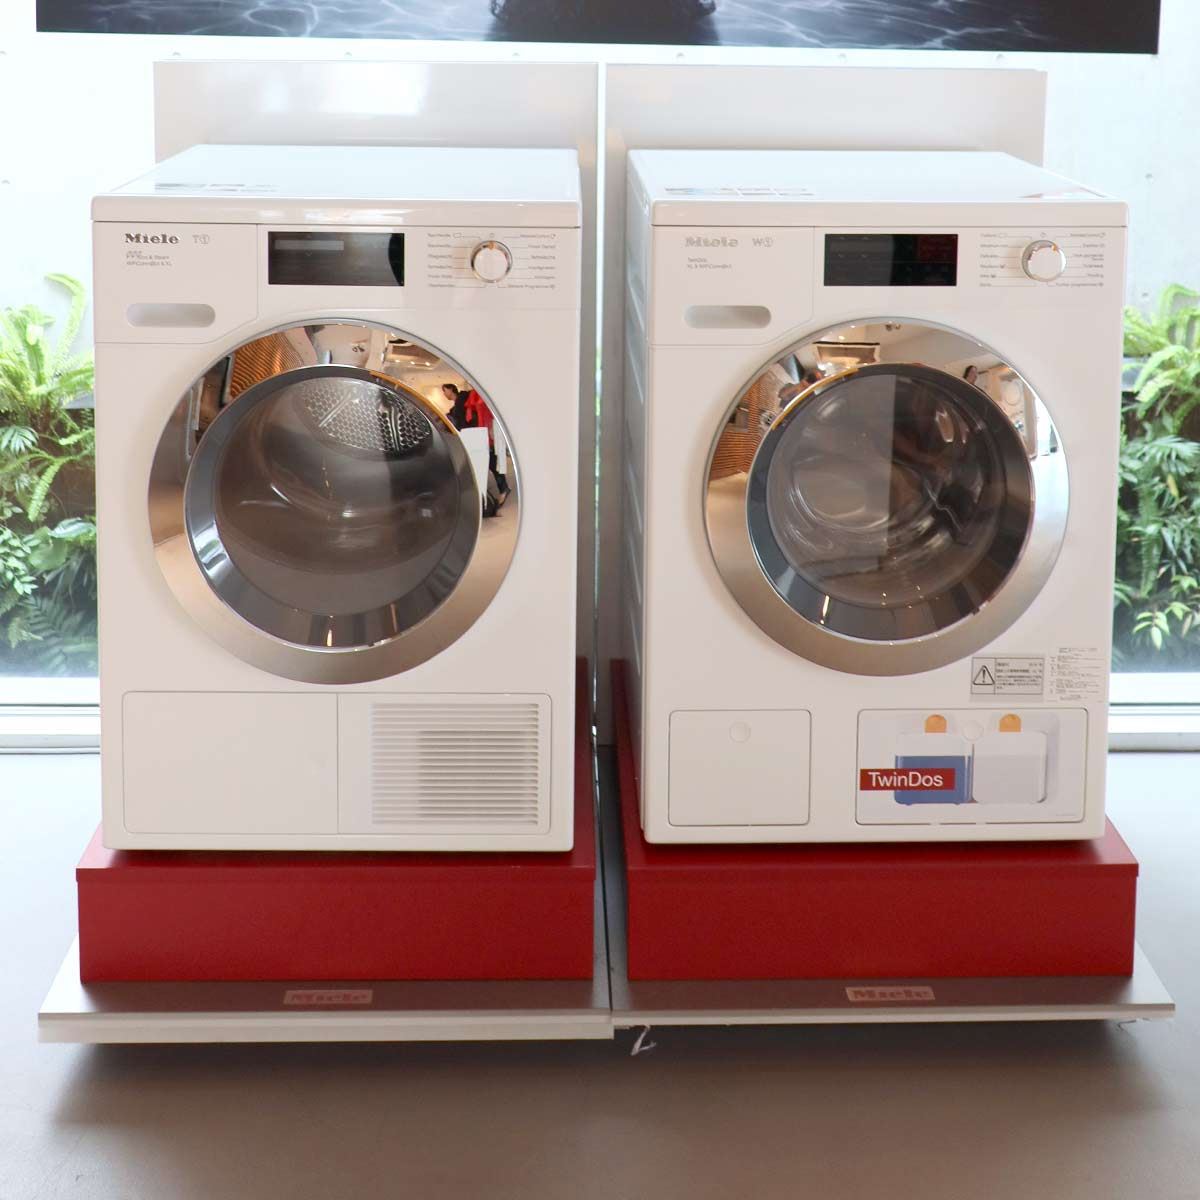 ドイツの高級家電ブランド・ミーレが発売したWi-Fiドラム式洗濯機「W1